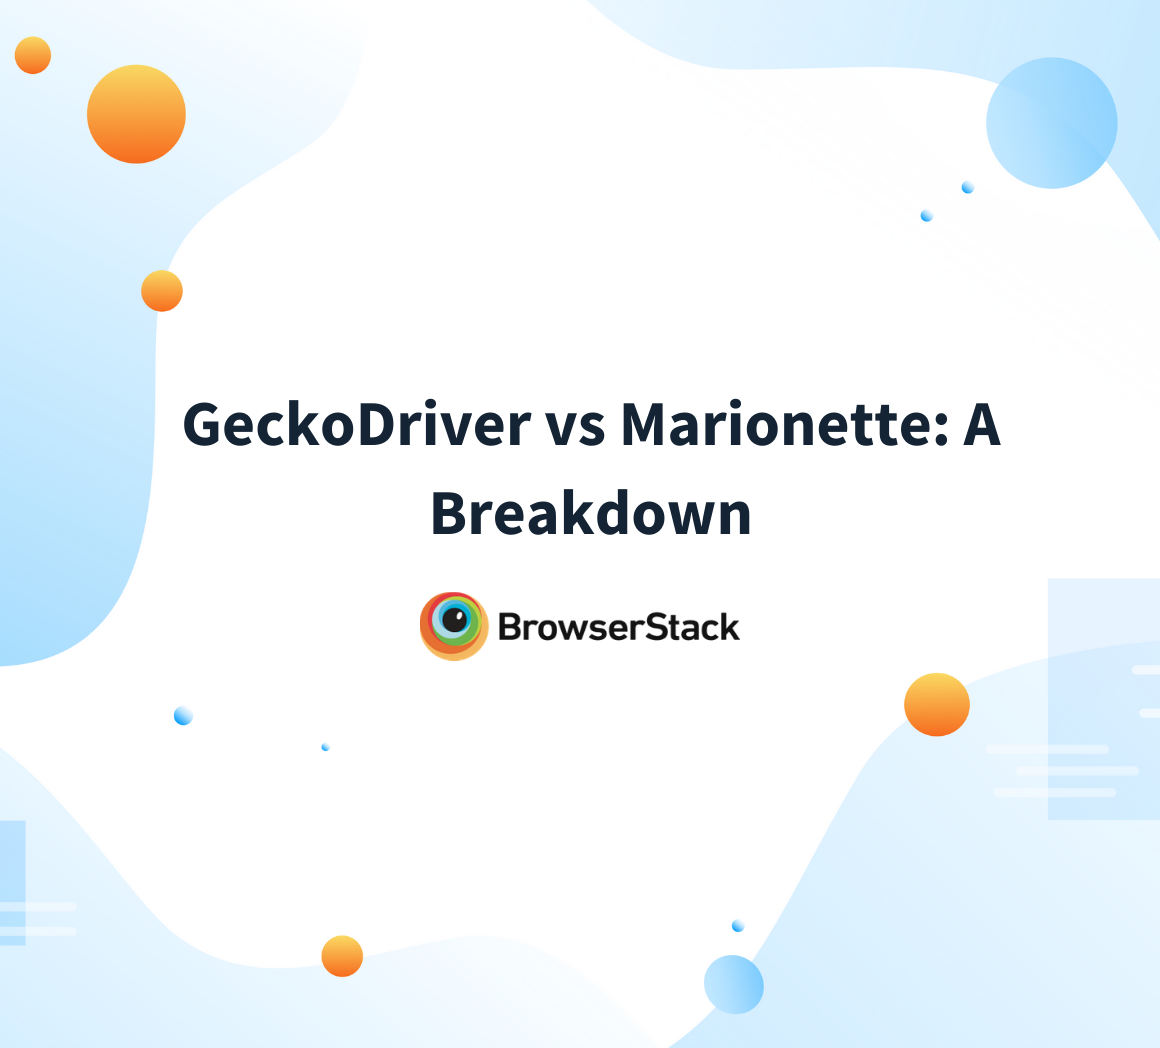 geckodriver vs marionette: detailed breakdown